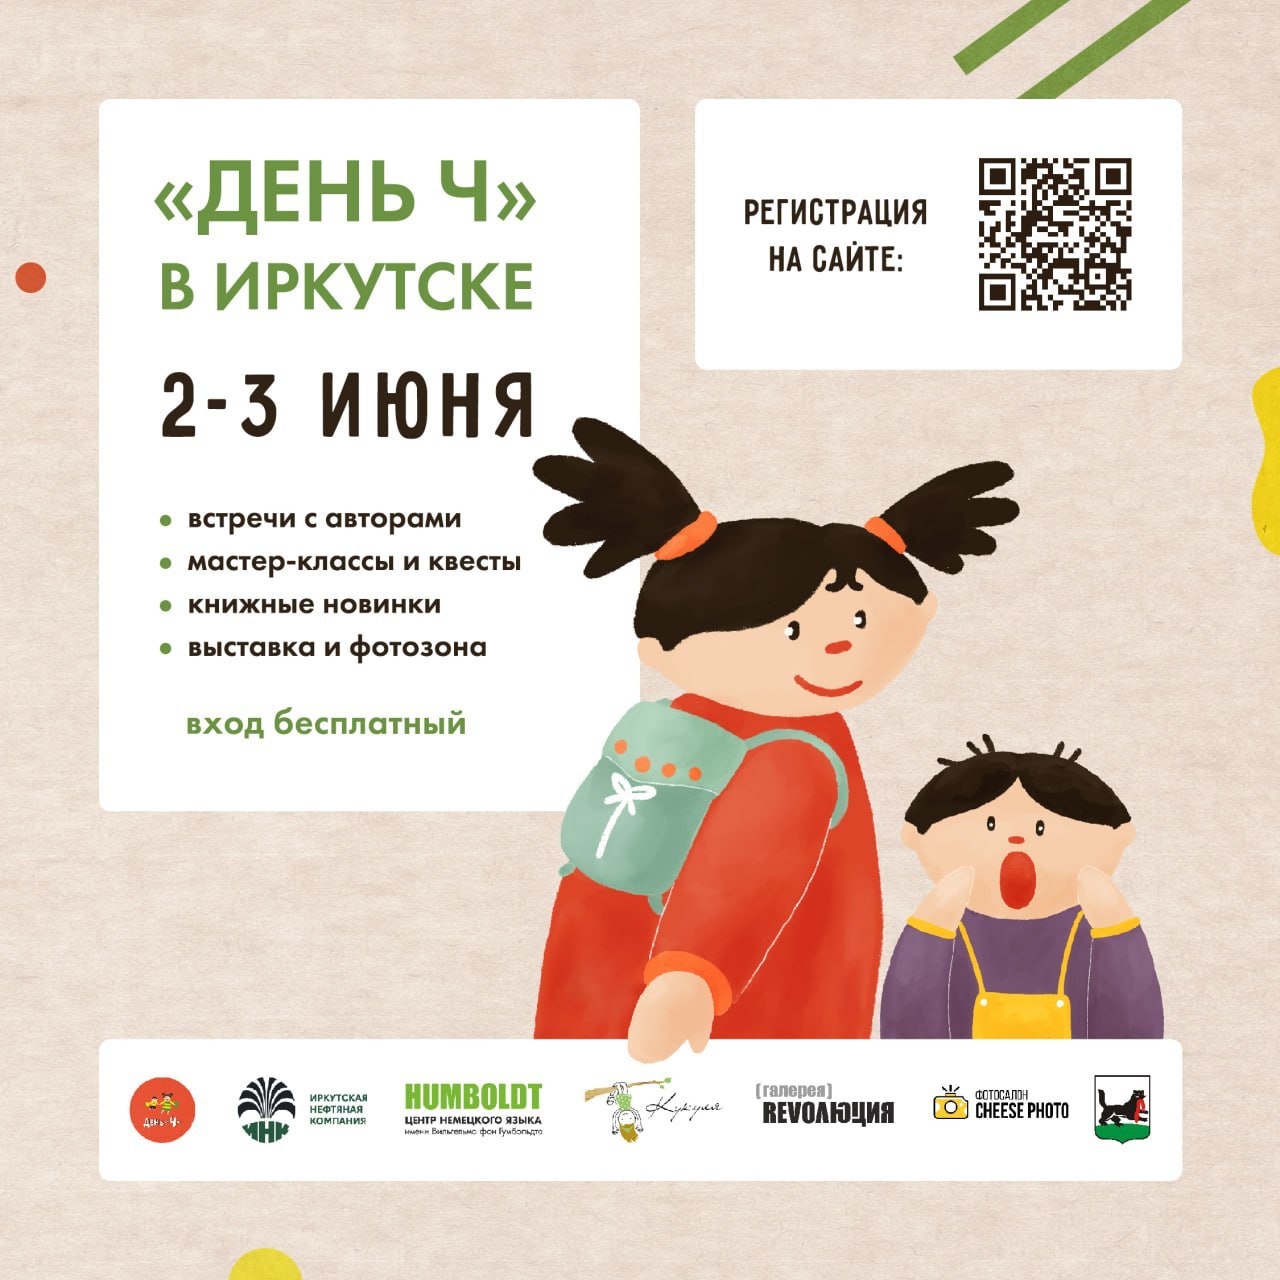 День Ч пройдет в Иркутске 2-3 июня